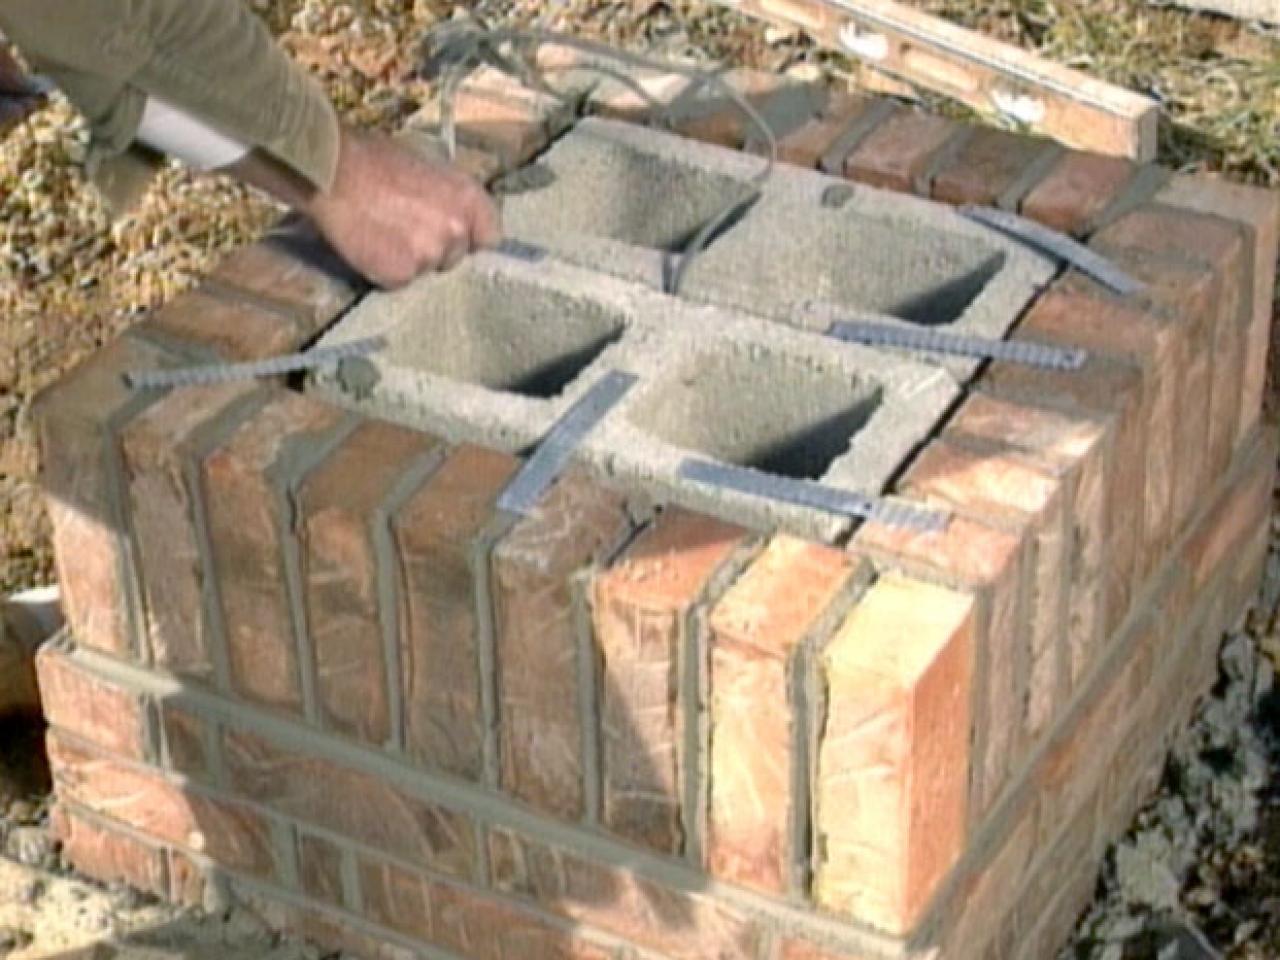 How to Build a Brick Mailbox | how-tos | DIY